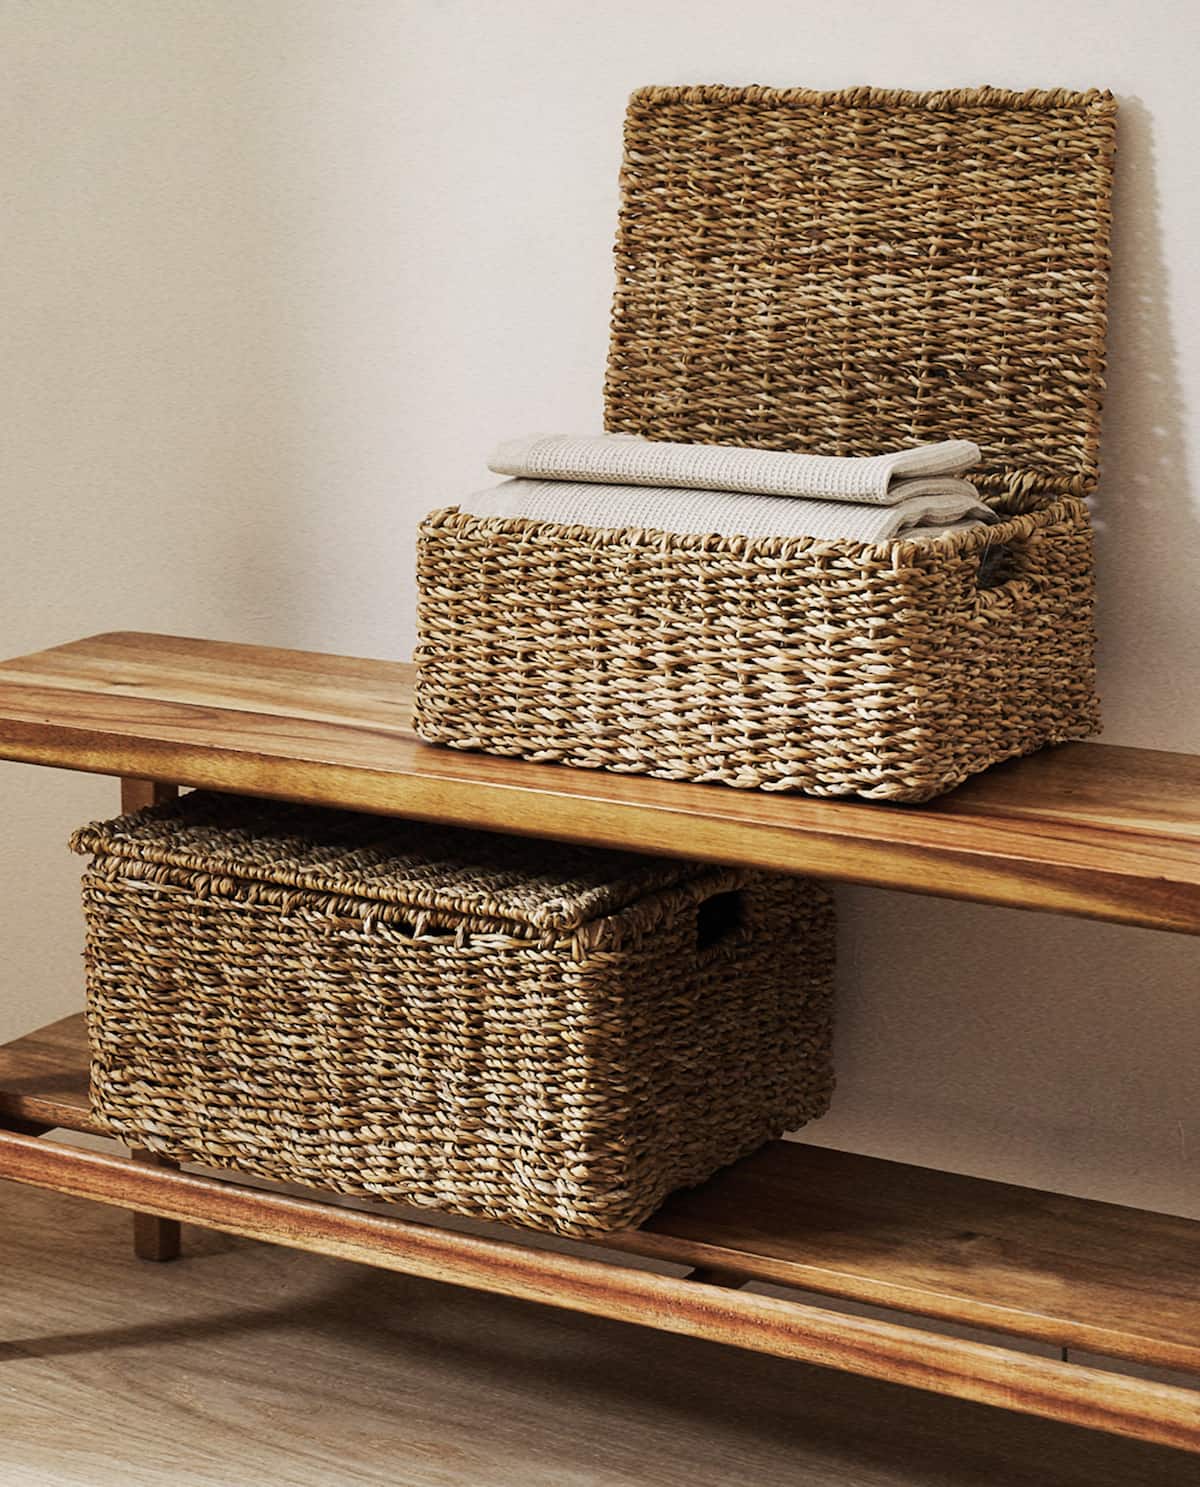 Guarda y decora, estas cestas de Zara Home te permitirán maximizar tu armario